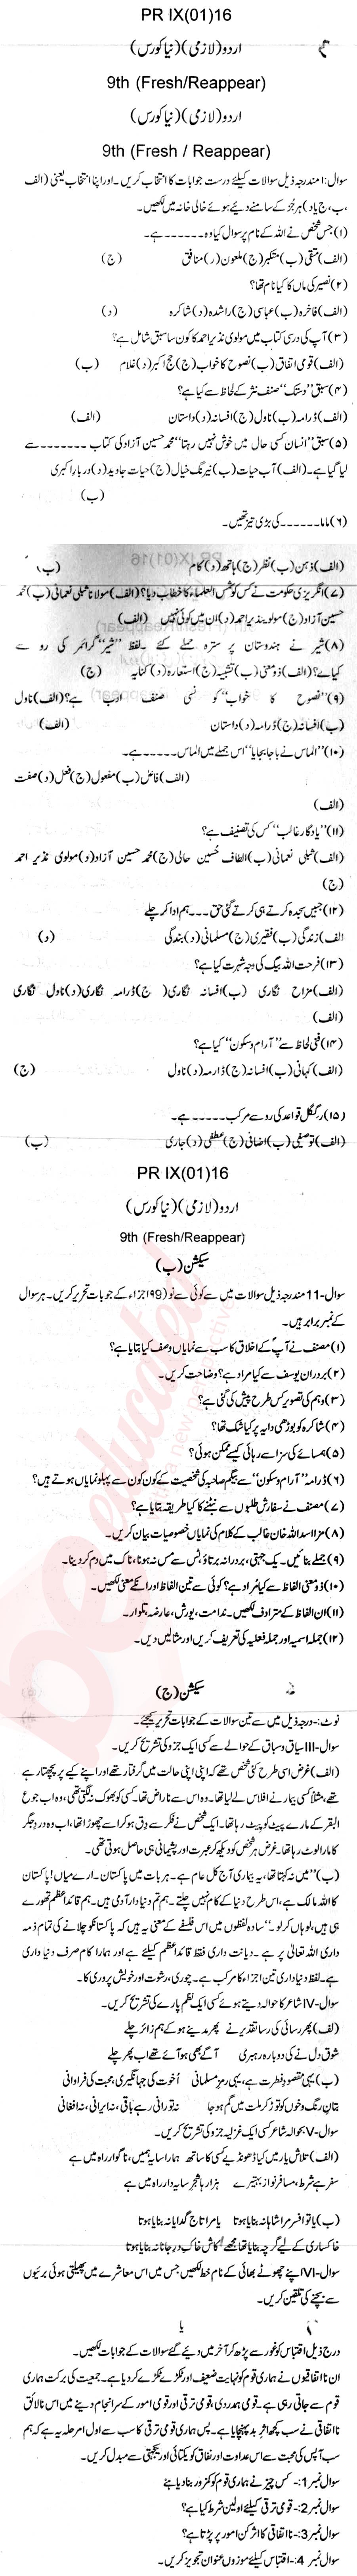 Urdu 9th Urdu Medium Past Paper Group 1 BISE Swat 2016